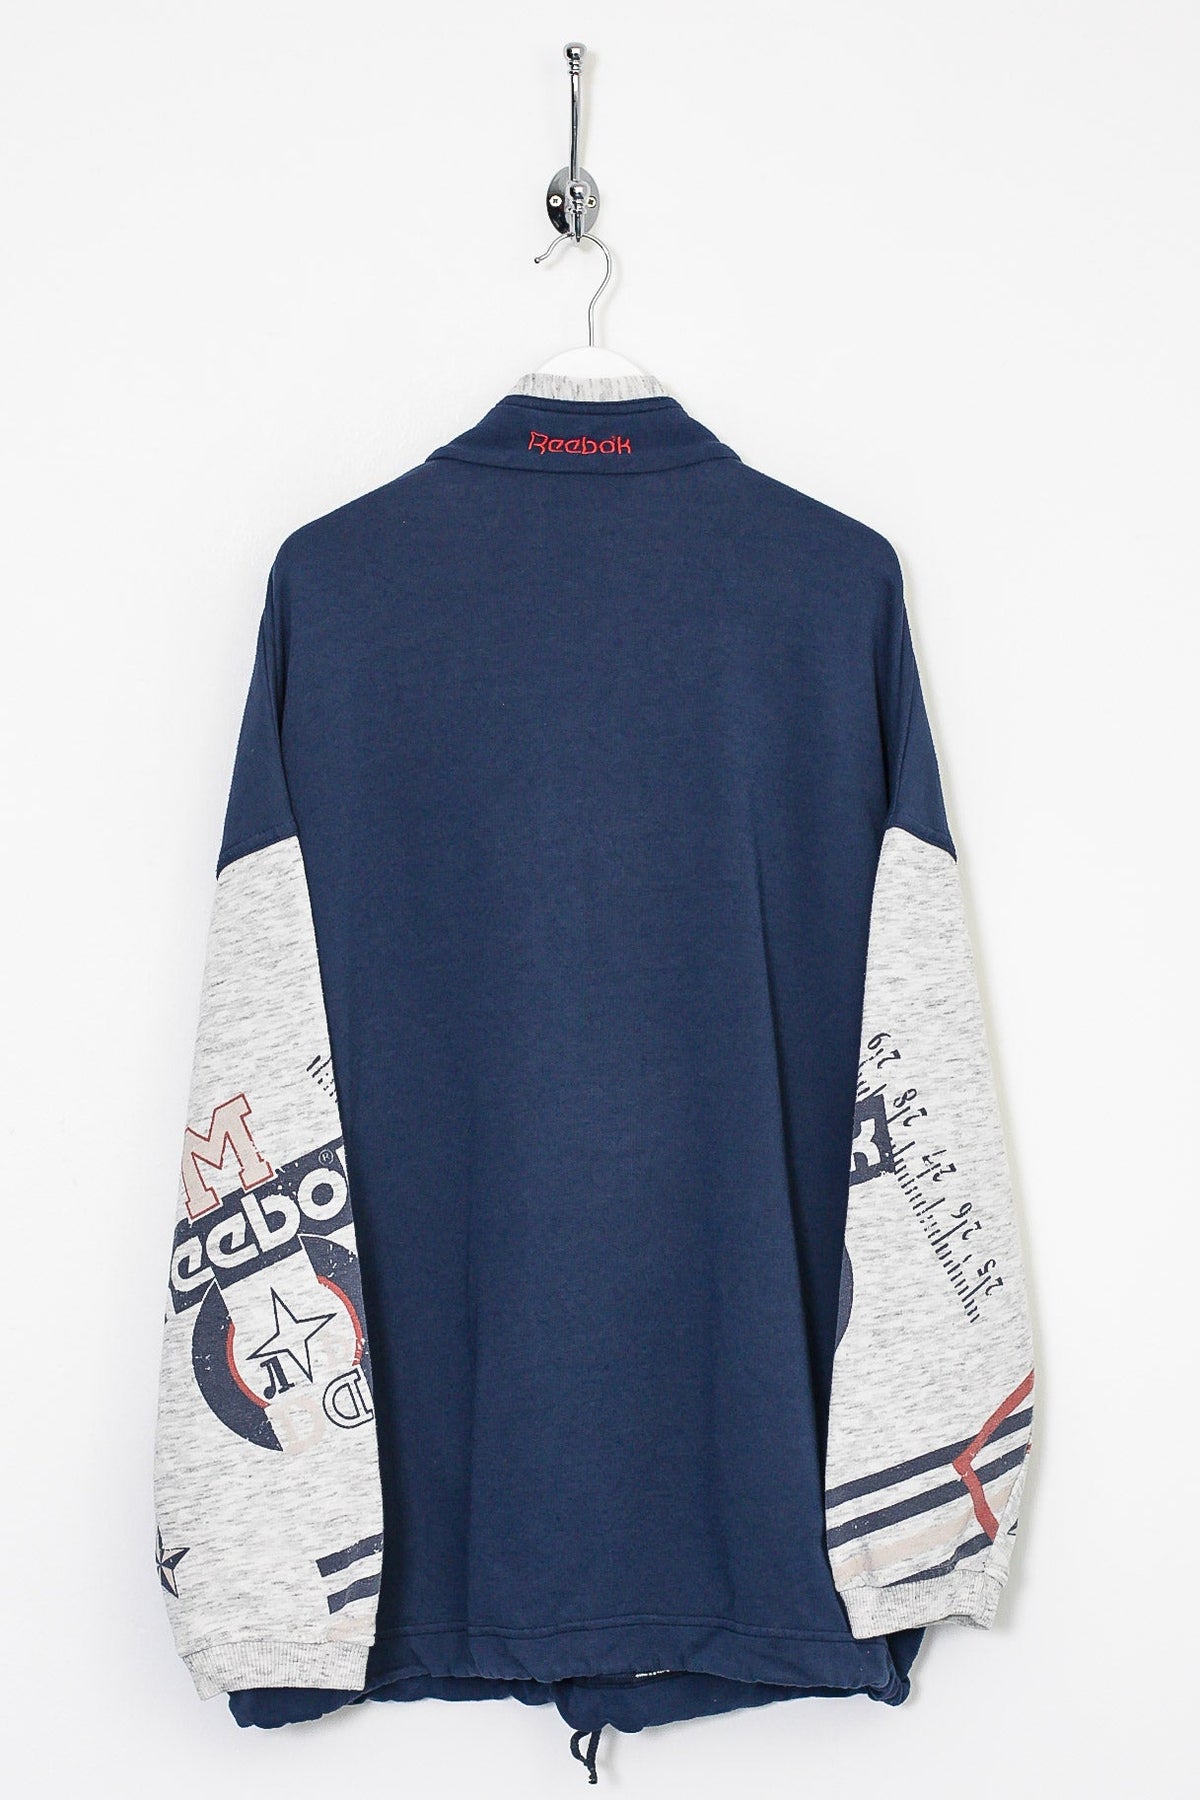 90s Reebok 1/4 Zip Sweatshirt (XL)